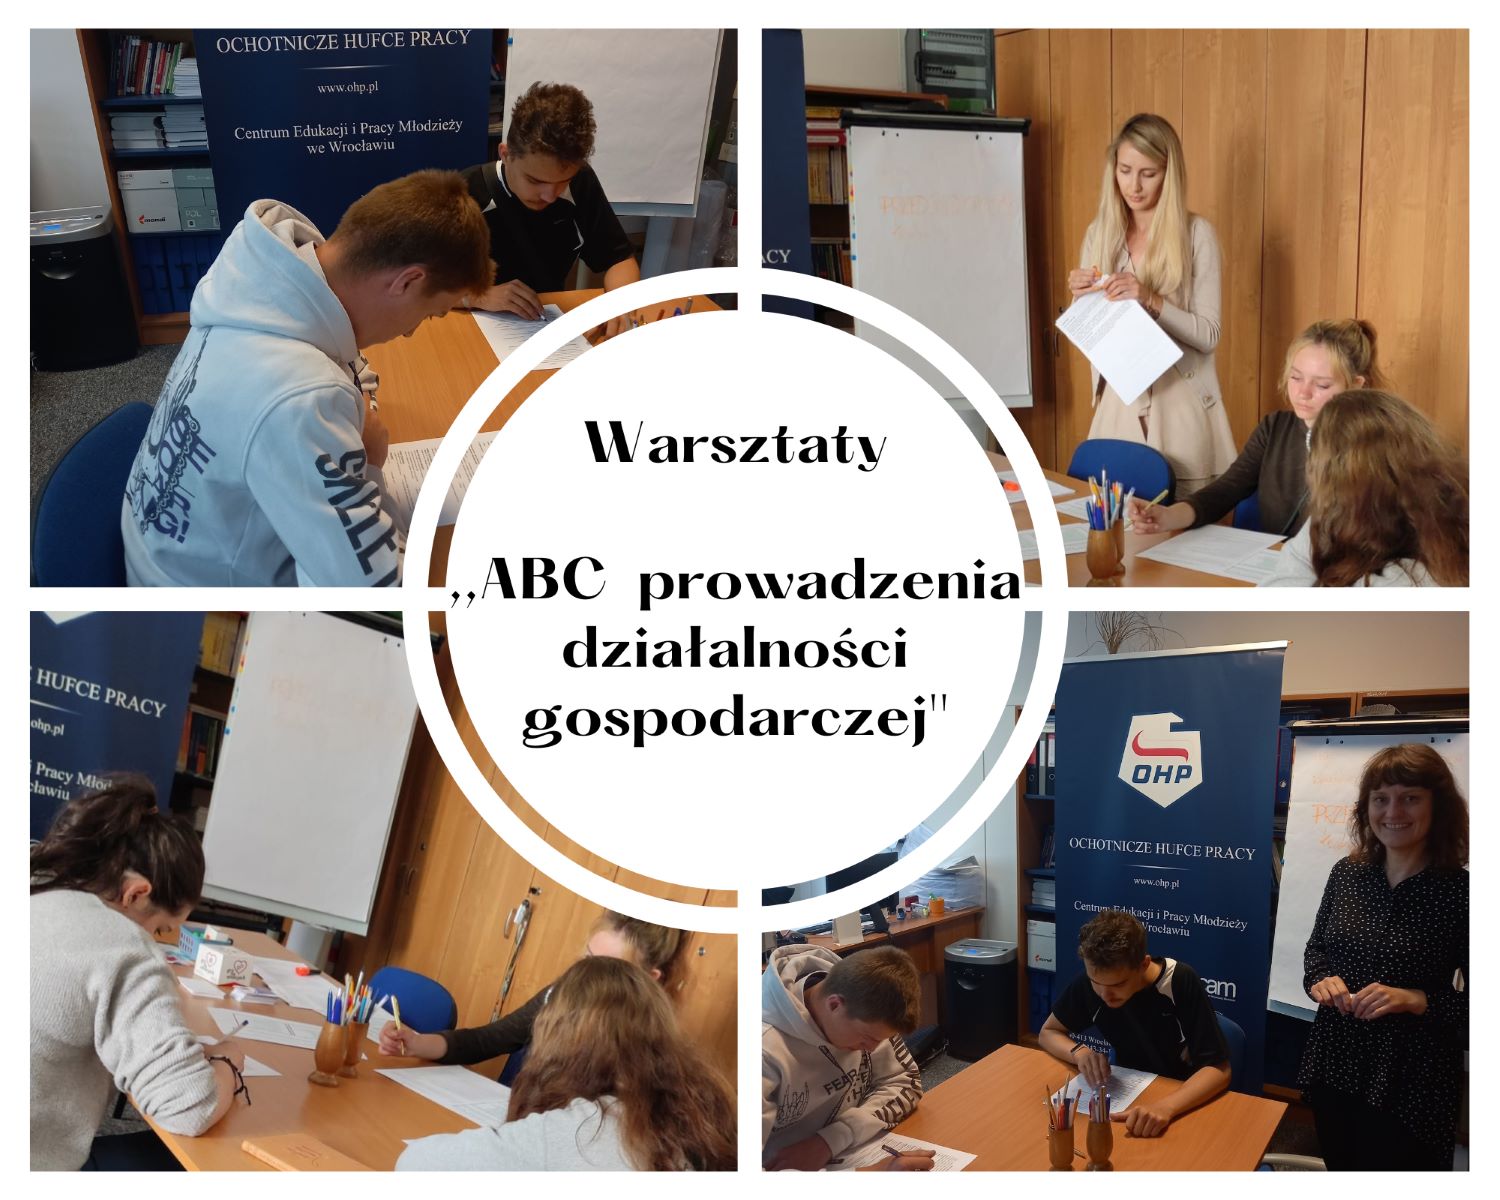 Warsztaty ABC prowadzenia działalności gospodarczej w OHP we Wrocławiu